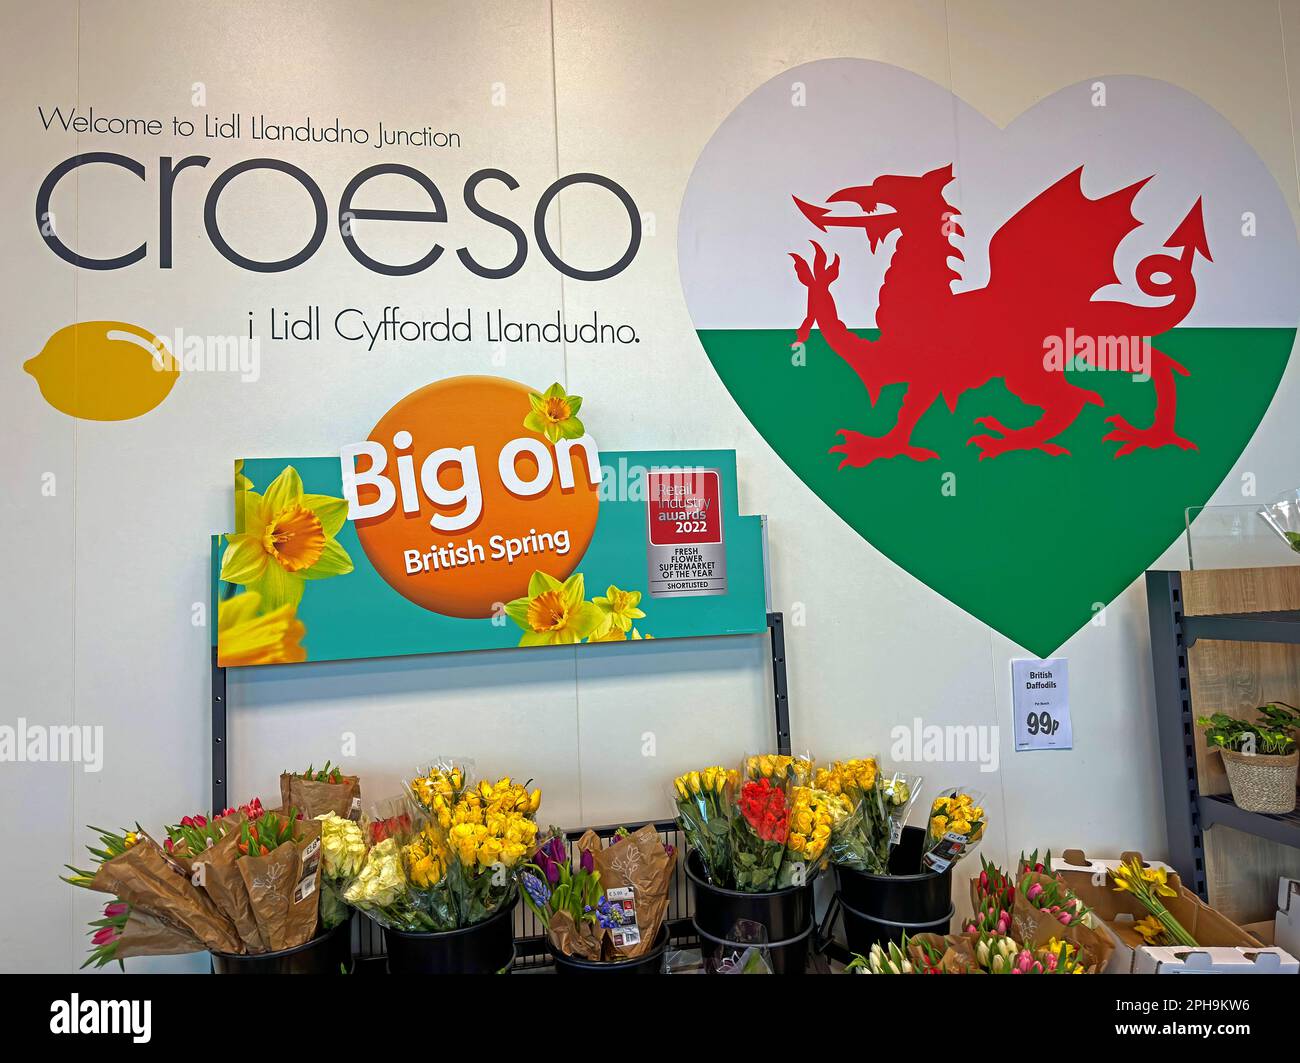 Willkommen im LIDL Supermarkt in Llandudno Junction - i Cyffordd Llandudno, ein Herz mit einem walisischen roten Drachen, Blumen, Narzissen Big on British Spring Stockfoto